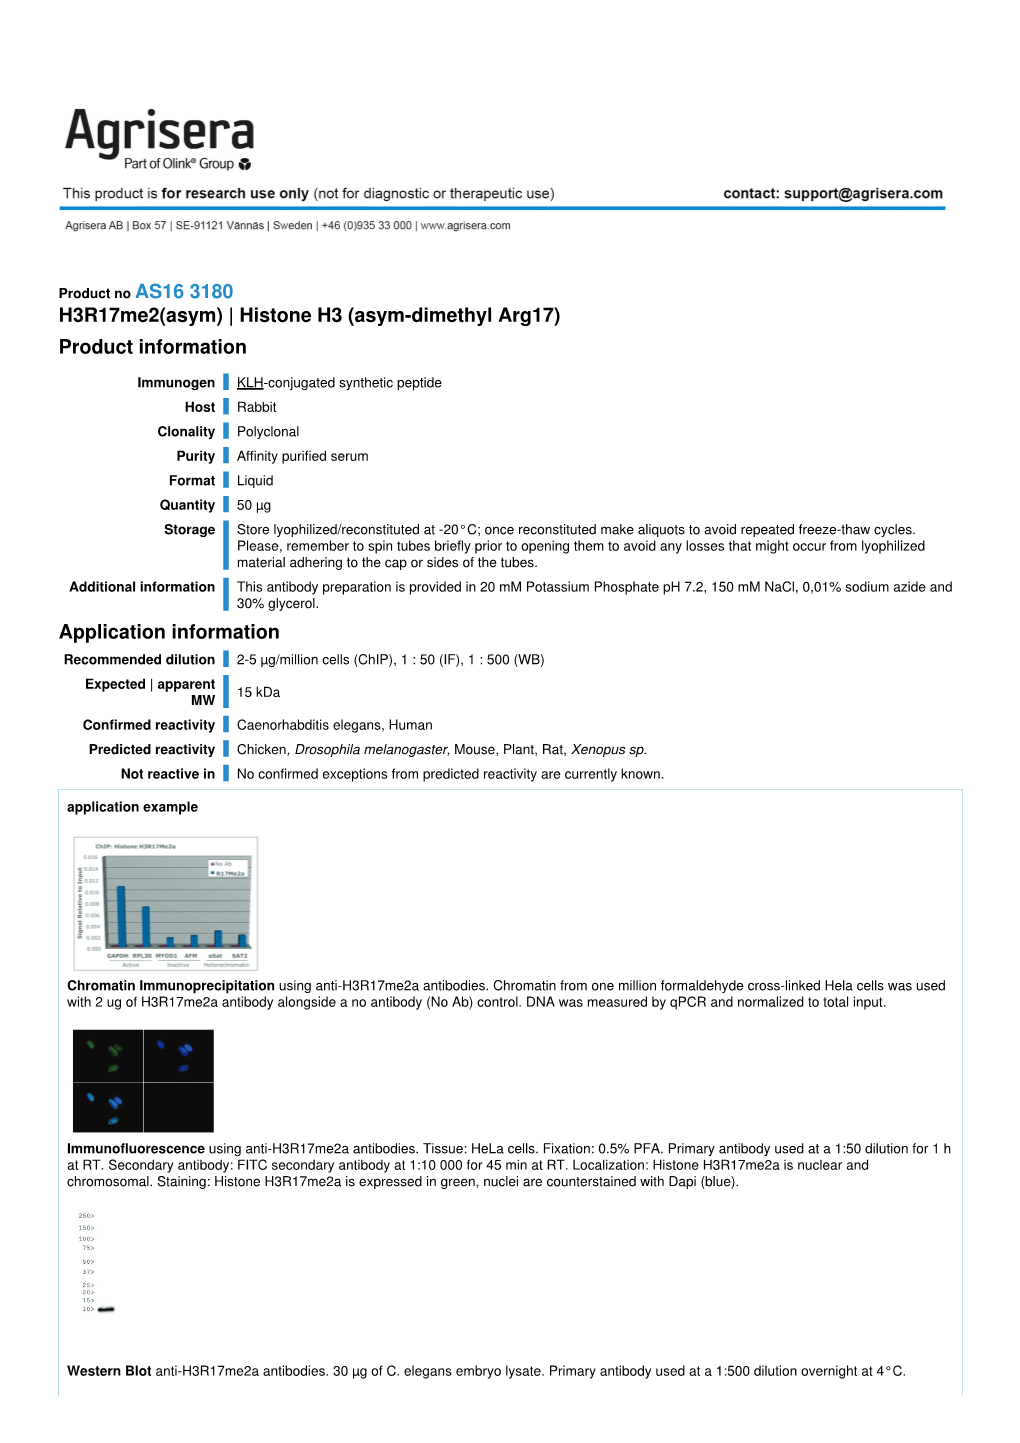 H3r17me2(Asym) | Histone H3 (Asym-Dimethyl Arg17) Product Information